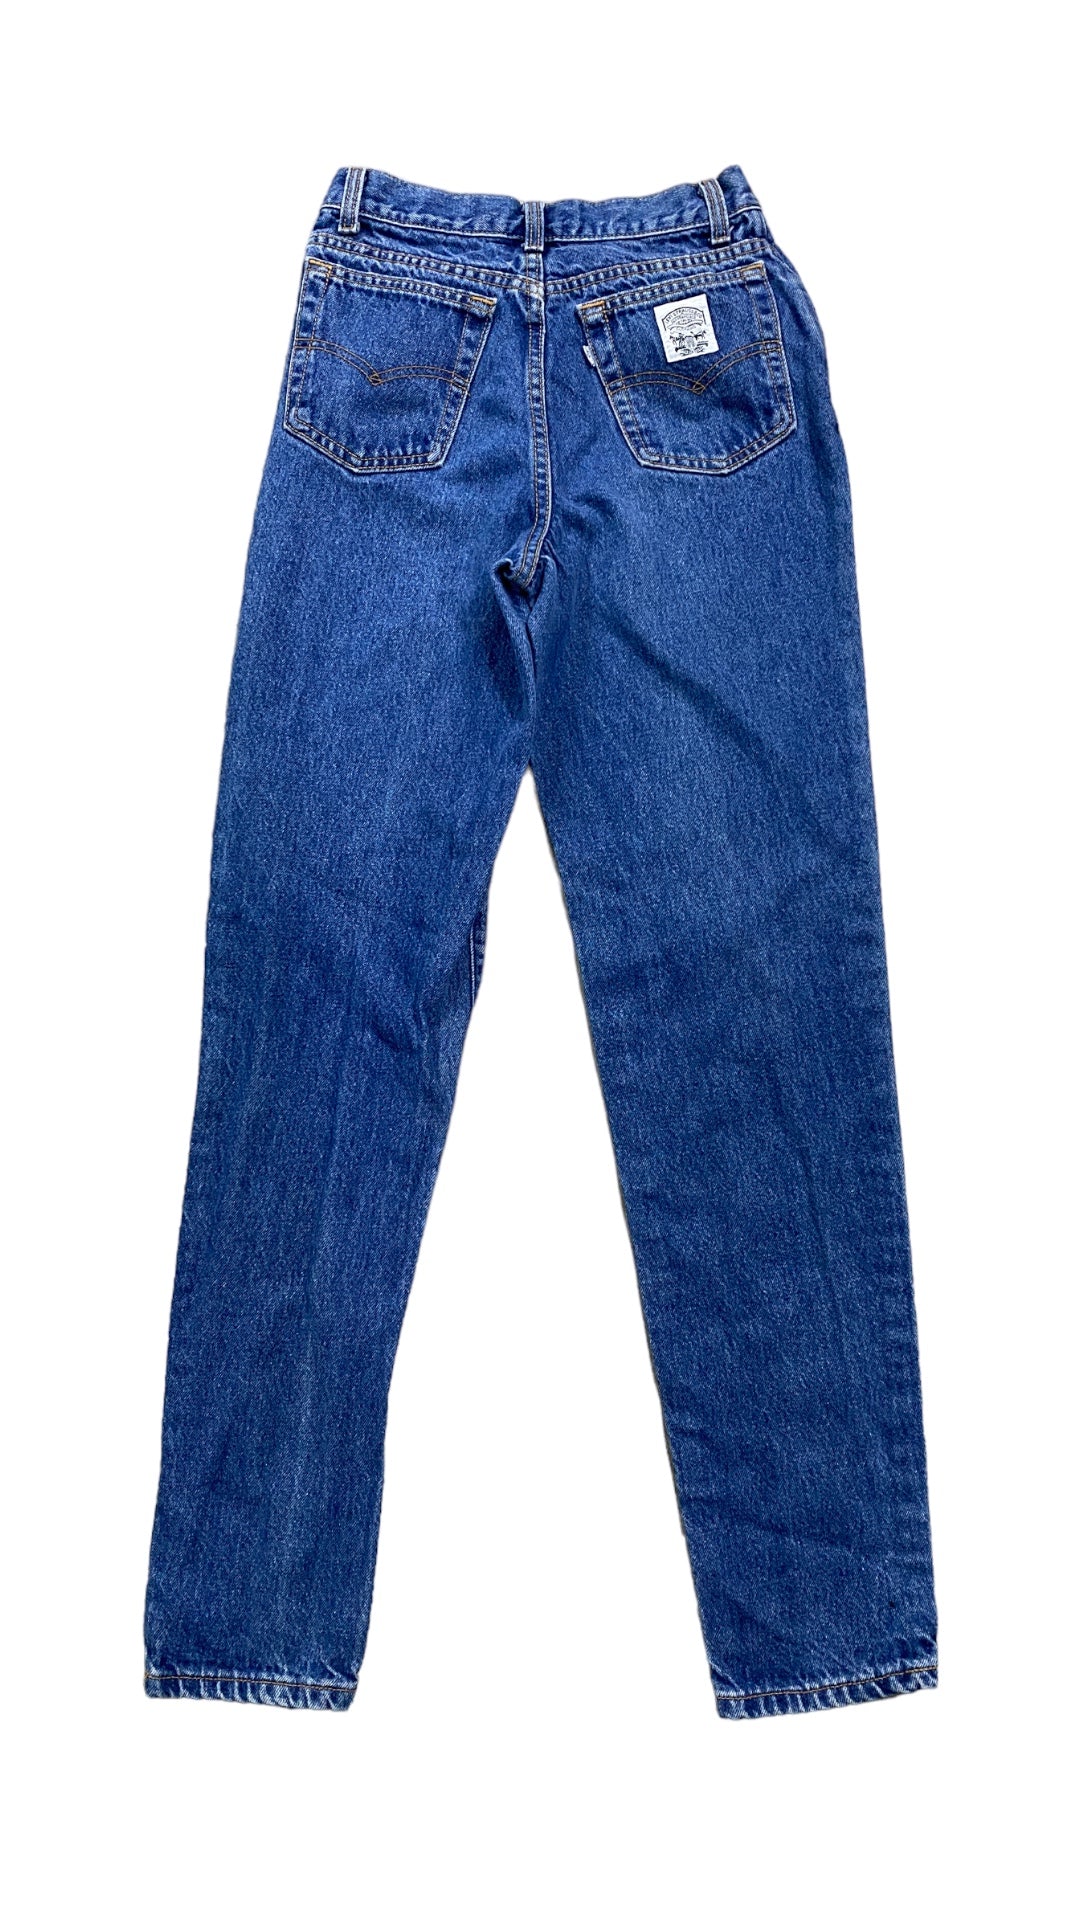 VTG Wmns Levi's 80's Blue Denim Jeans Sz 26